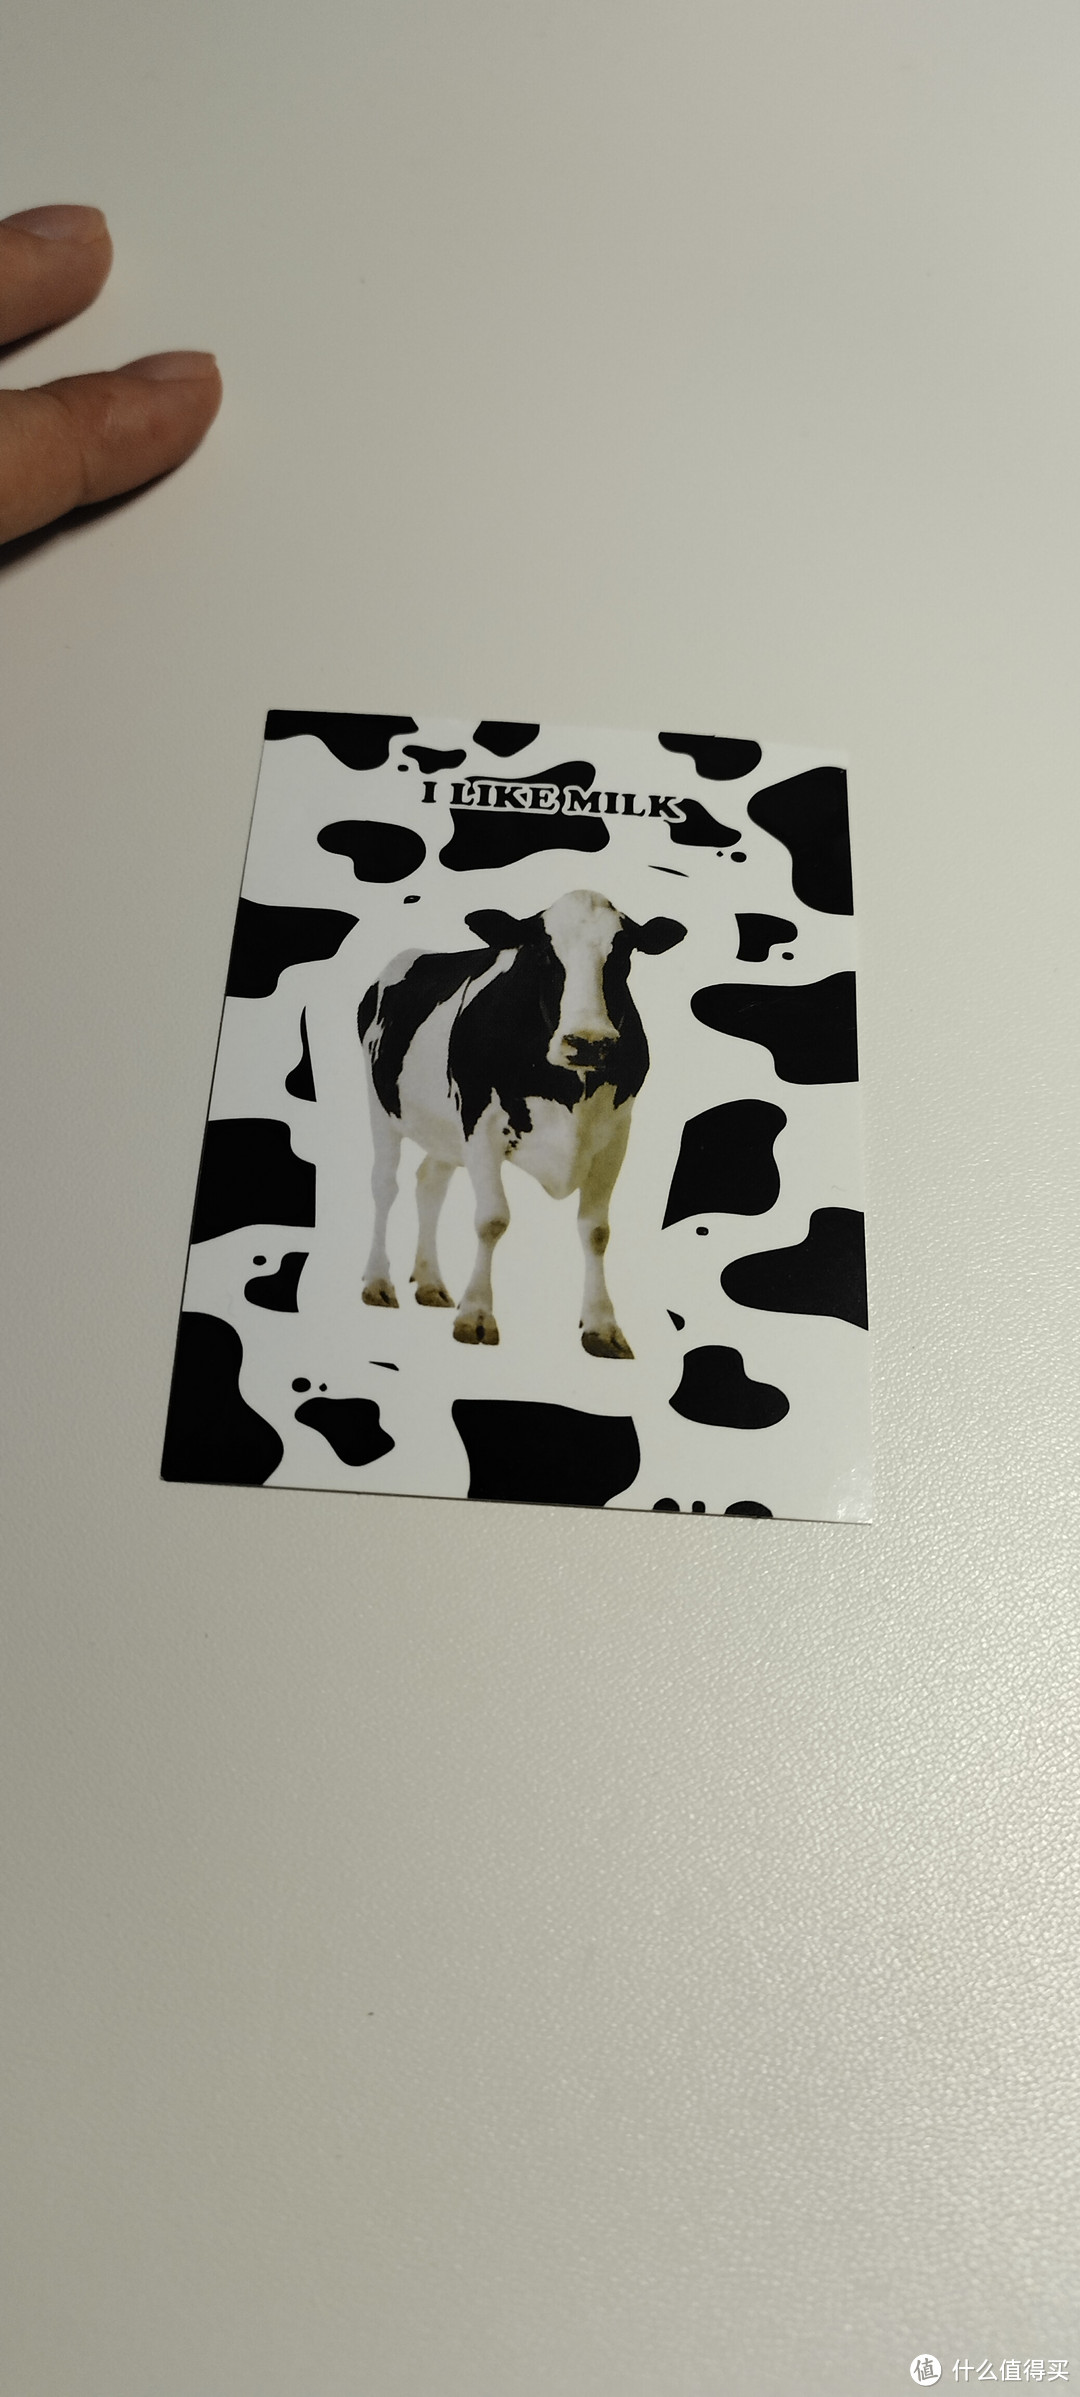 我的奶牛系列🐄贴纸 ，瞬间get到了ins感的贴纸，就问谁不喜欢啊。